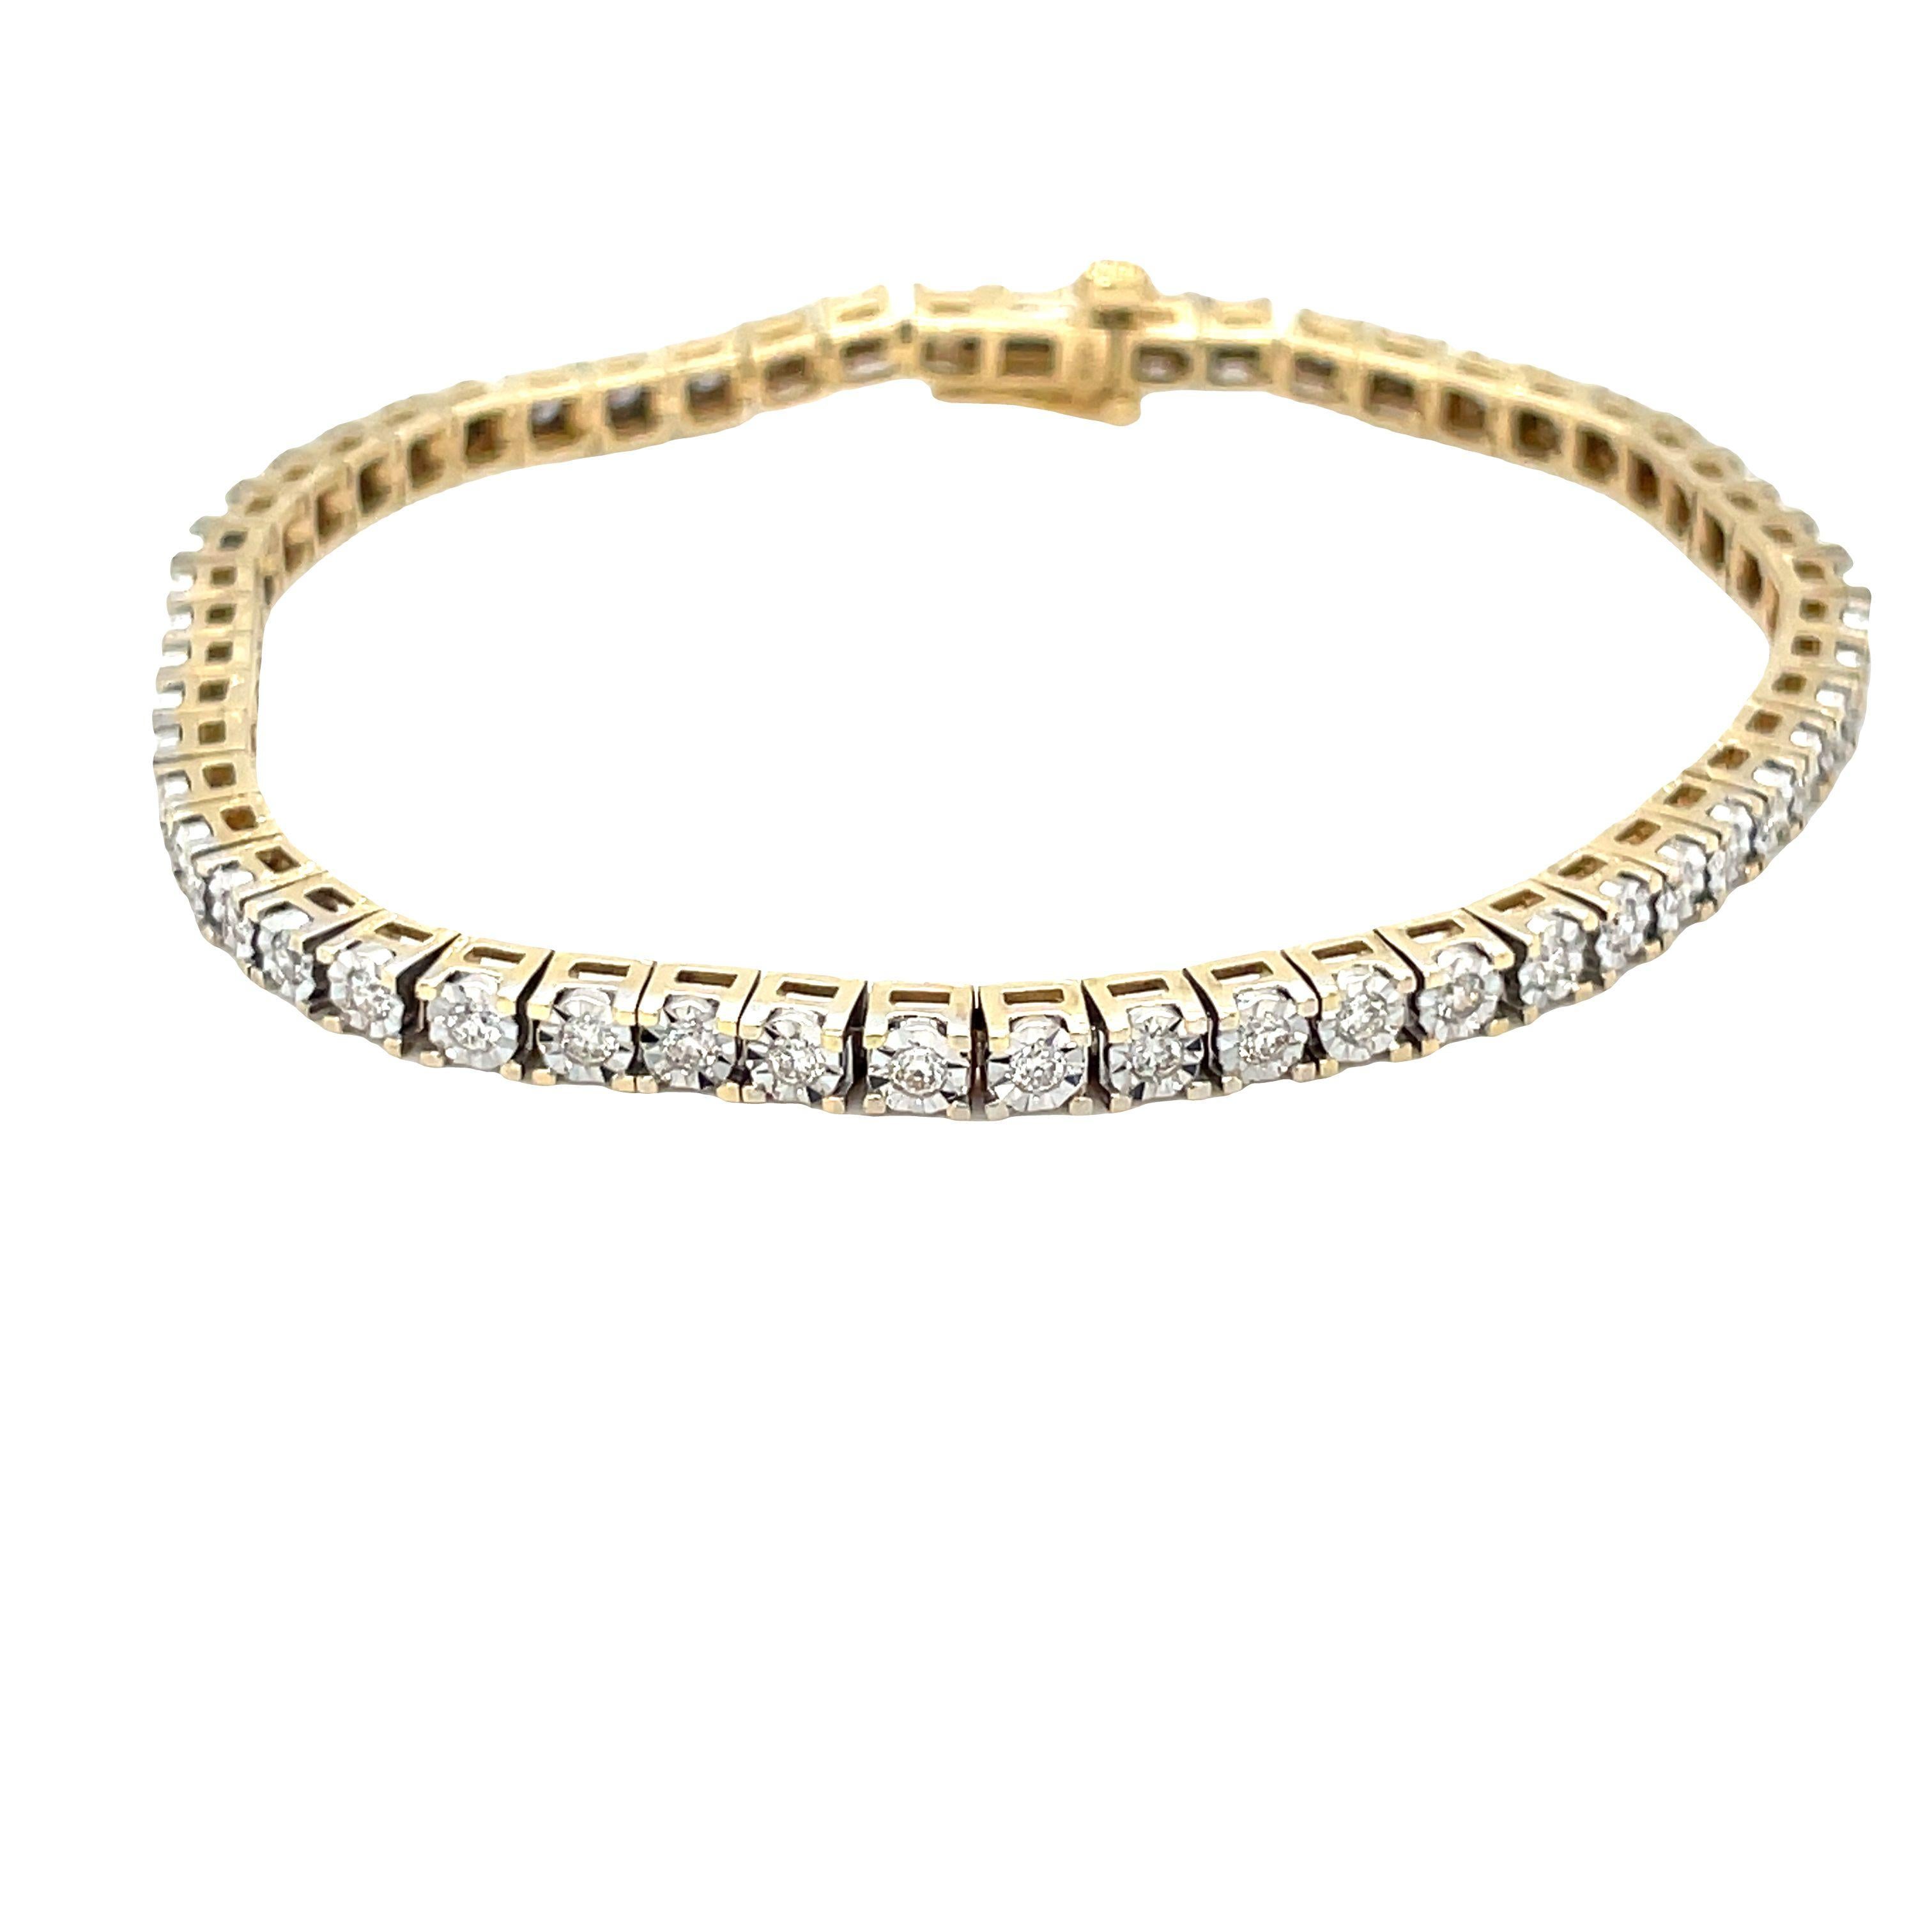 Élevez votre style de tous les jours avec ce charmant bracelet tennis à diamants ! Fabriqué en élégant or jaune 10 carats, il présente 1,90 carats de diamants de taille ronde de couleur G à H et de pureté SI2. Les 54 diamants et la monture illusion